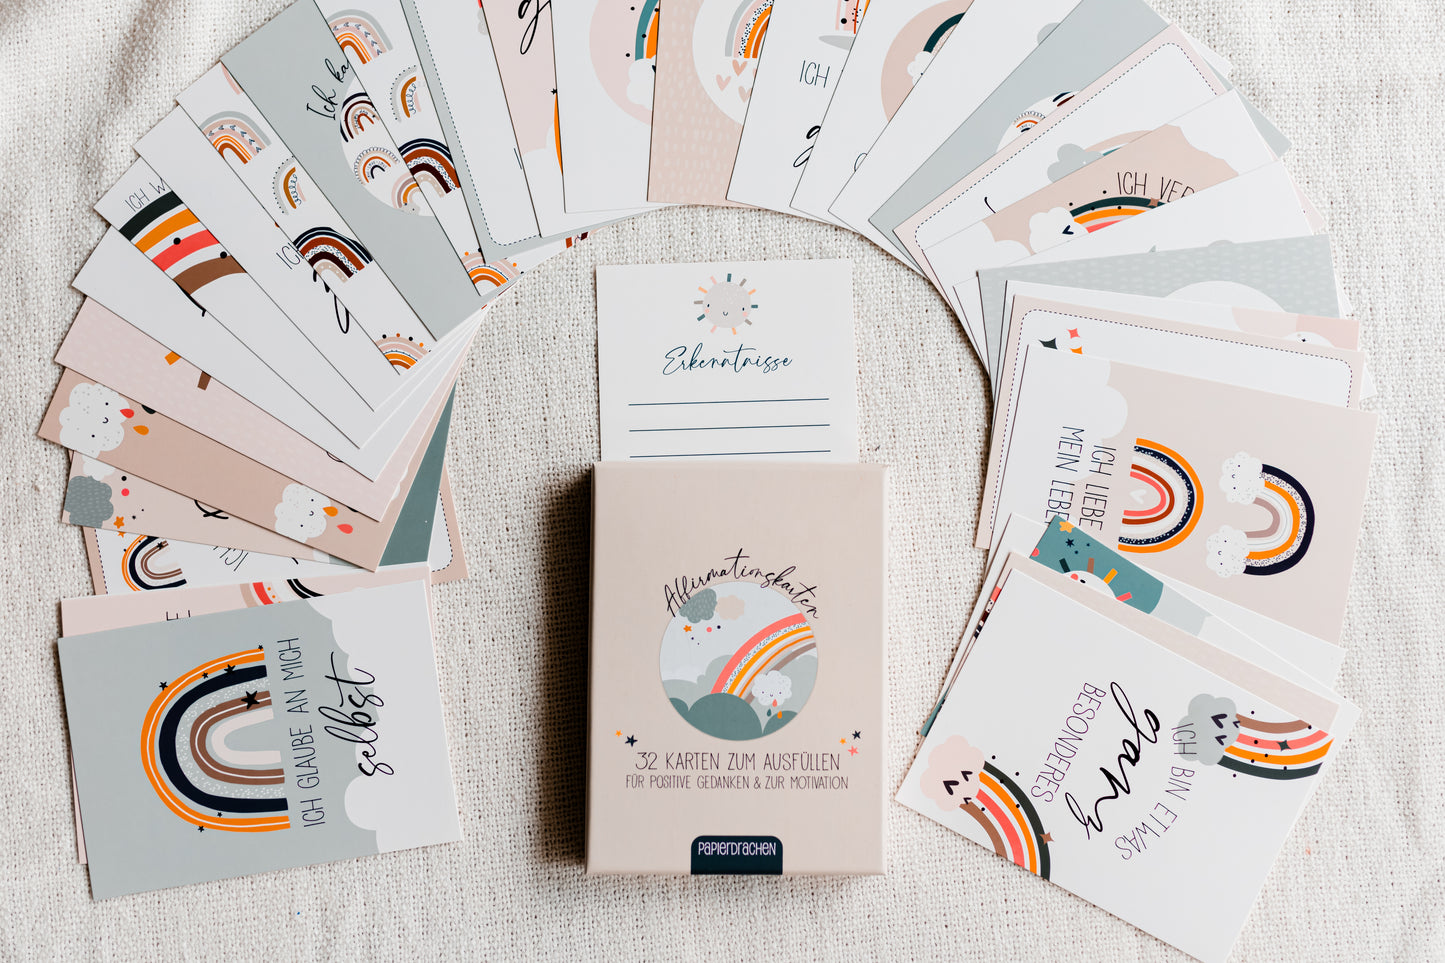 Affirmationskarten für Kinder - 32 liebevoll gestaltete Karten - Süße Regenbogen Illustrationen & wundervolle Affirmationen für Kids